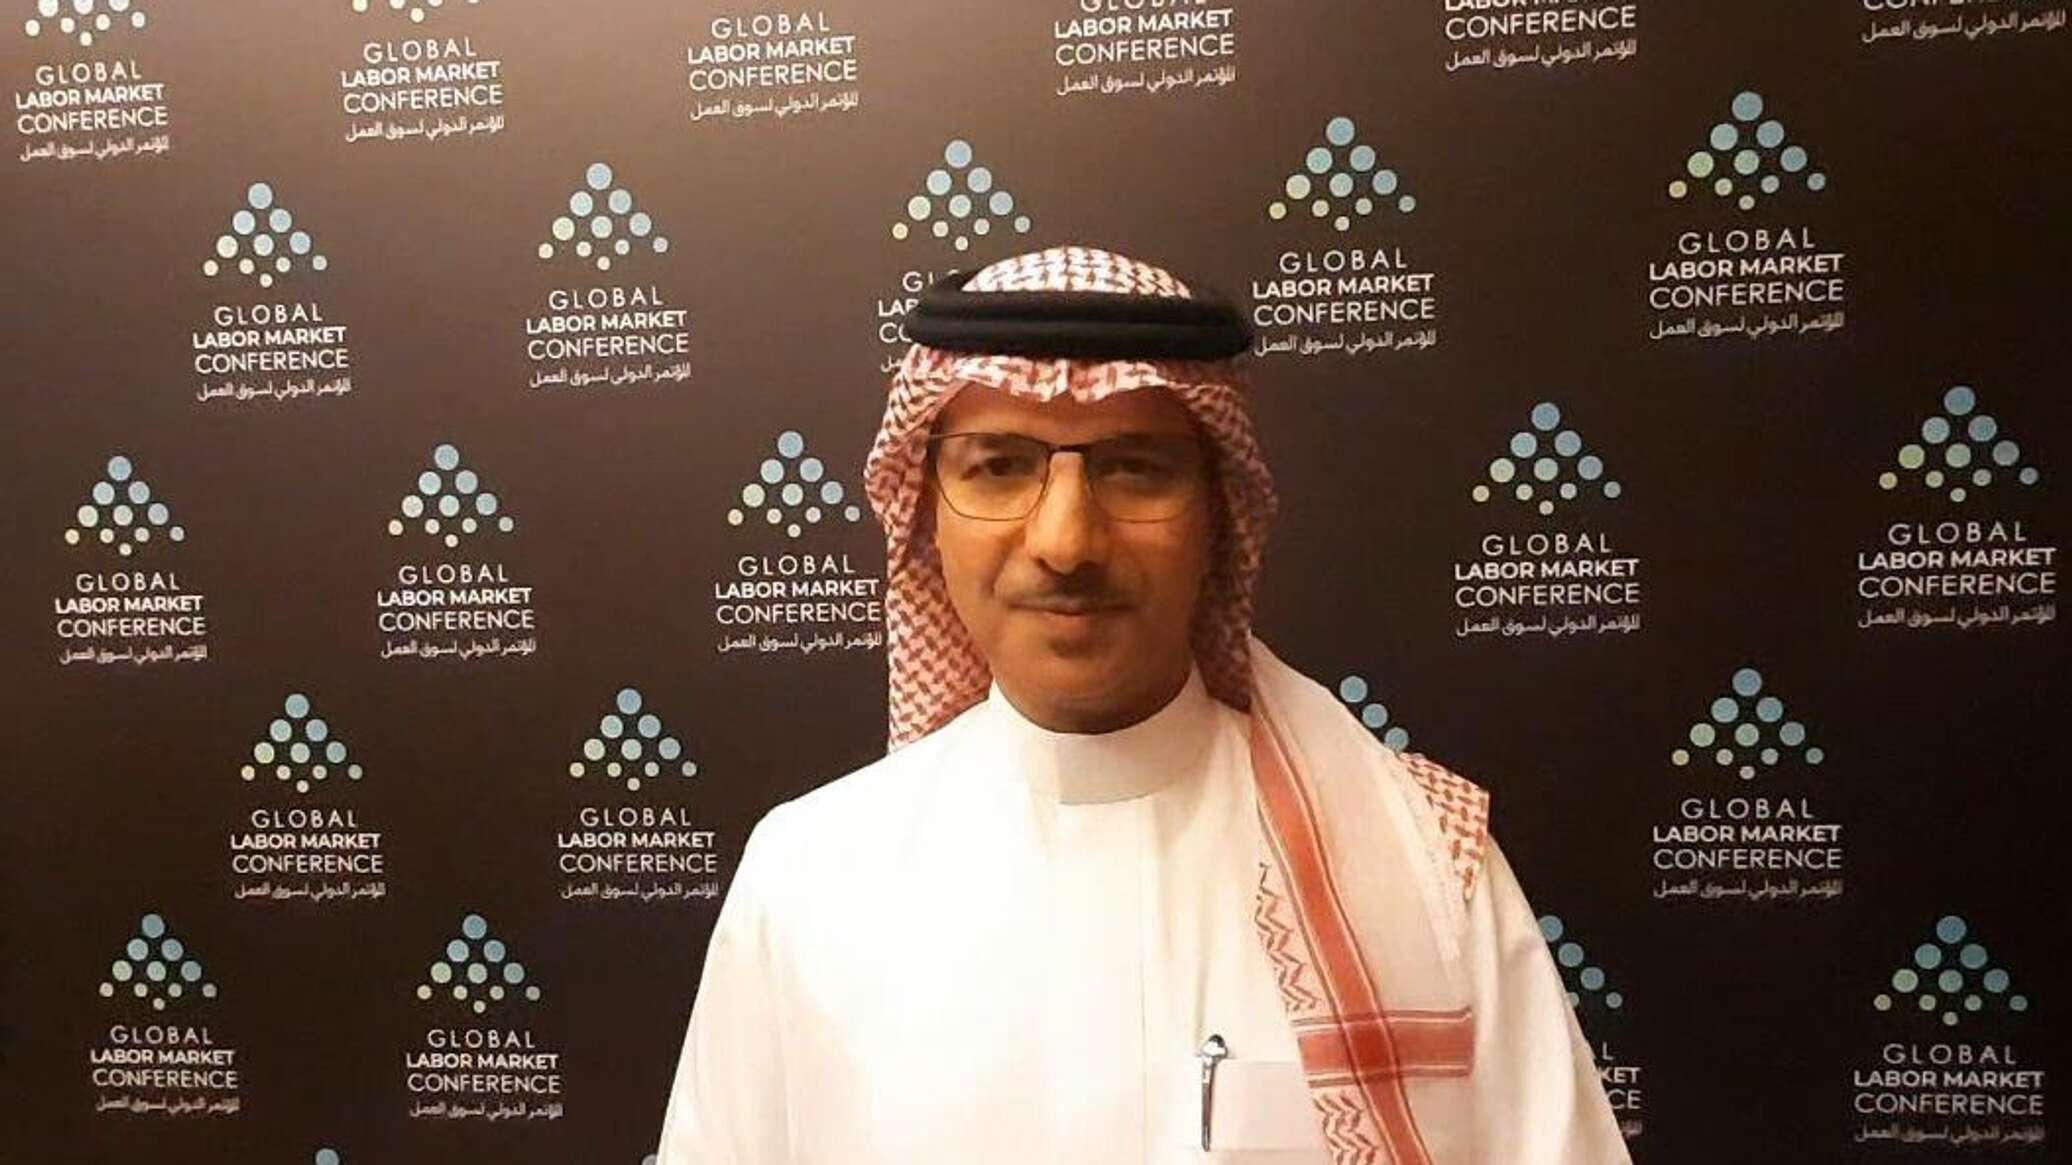 نائب وزير الموارد البشرية في السعودية: هناك مشاركة فعالة في مؤتمر سوق العمل من أكثر من 40 دولة